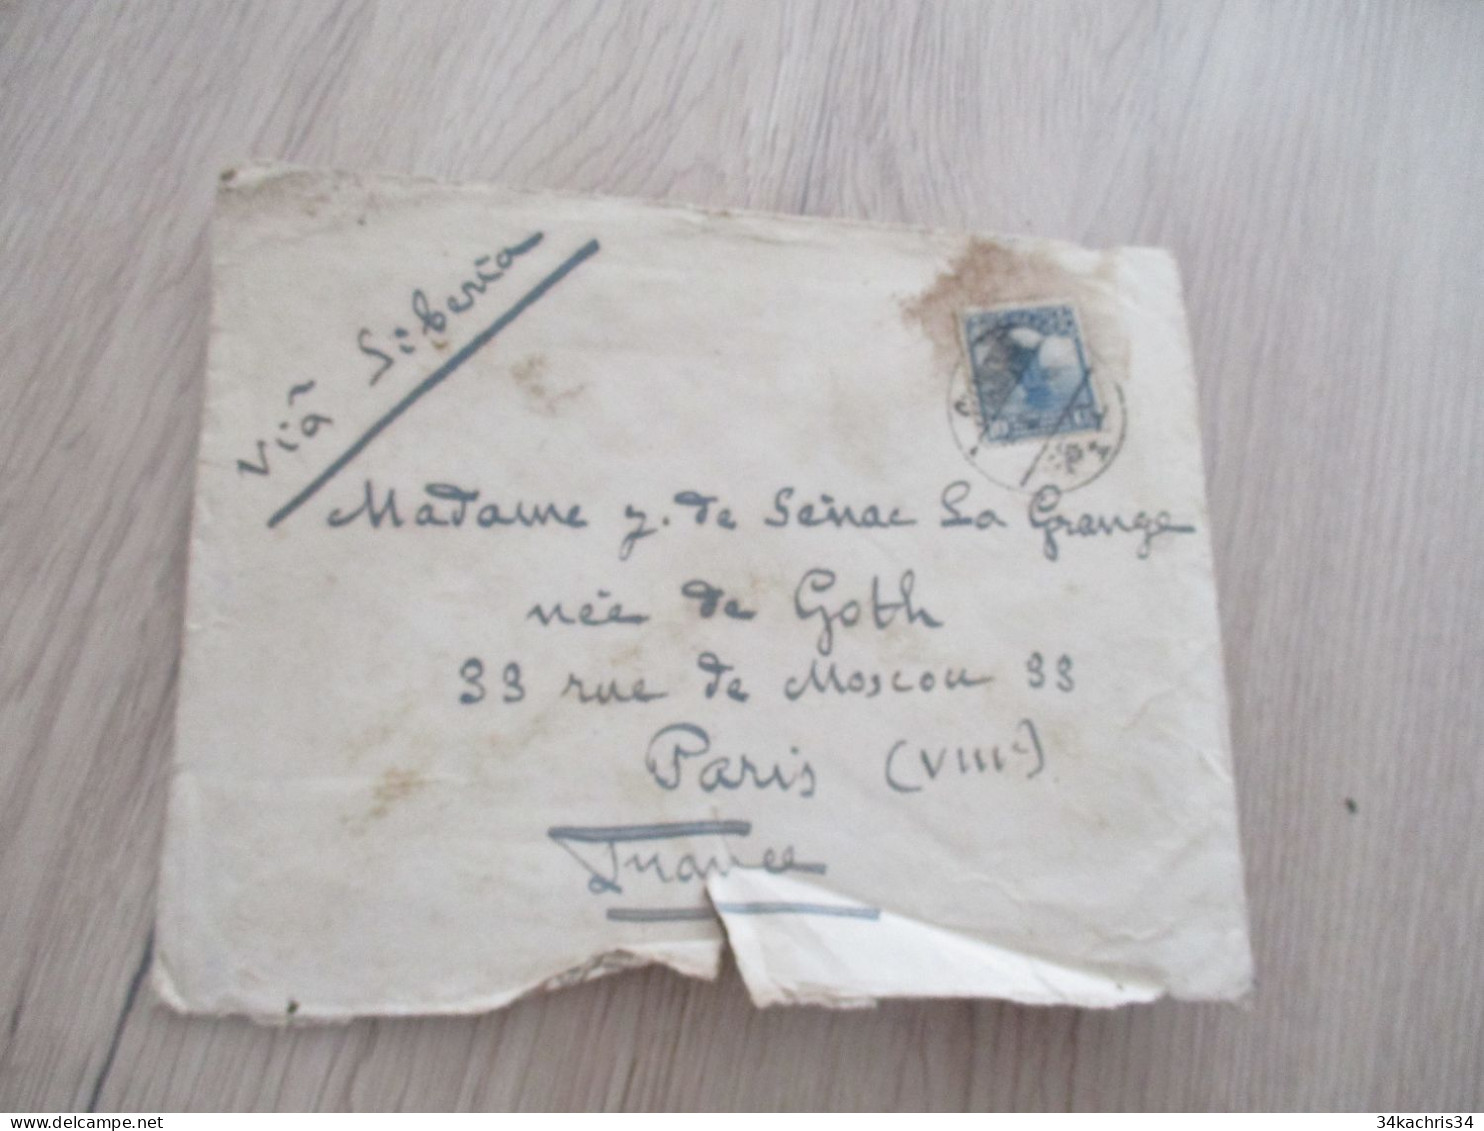 Chine China Lot de 10 lettres letters années 30 Shanghai en l'état in this condition voir photos